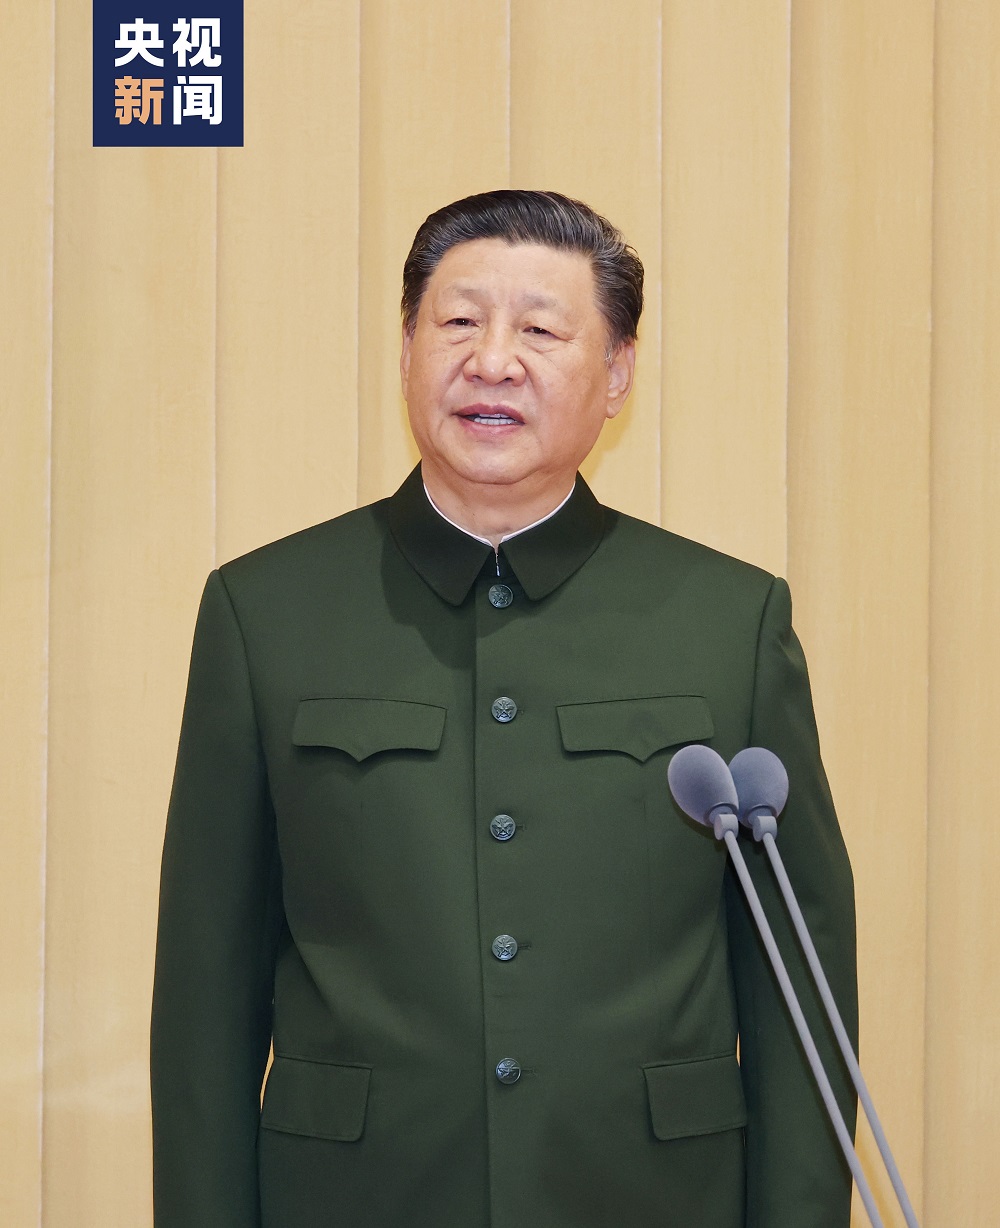 4月19日，信息支援部队成立大会在北京八一大楼隆重举行。中共中央总书记、国家主席、中央军委主席习近平向信息支援部队授予军旗并致训词。这是习近平致训词。